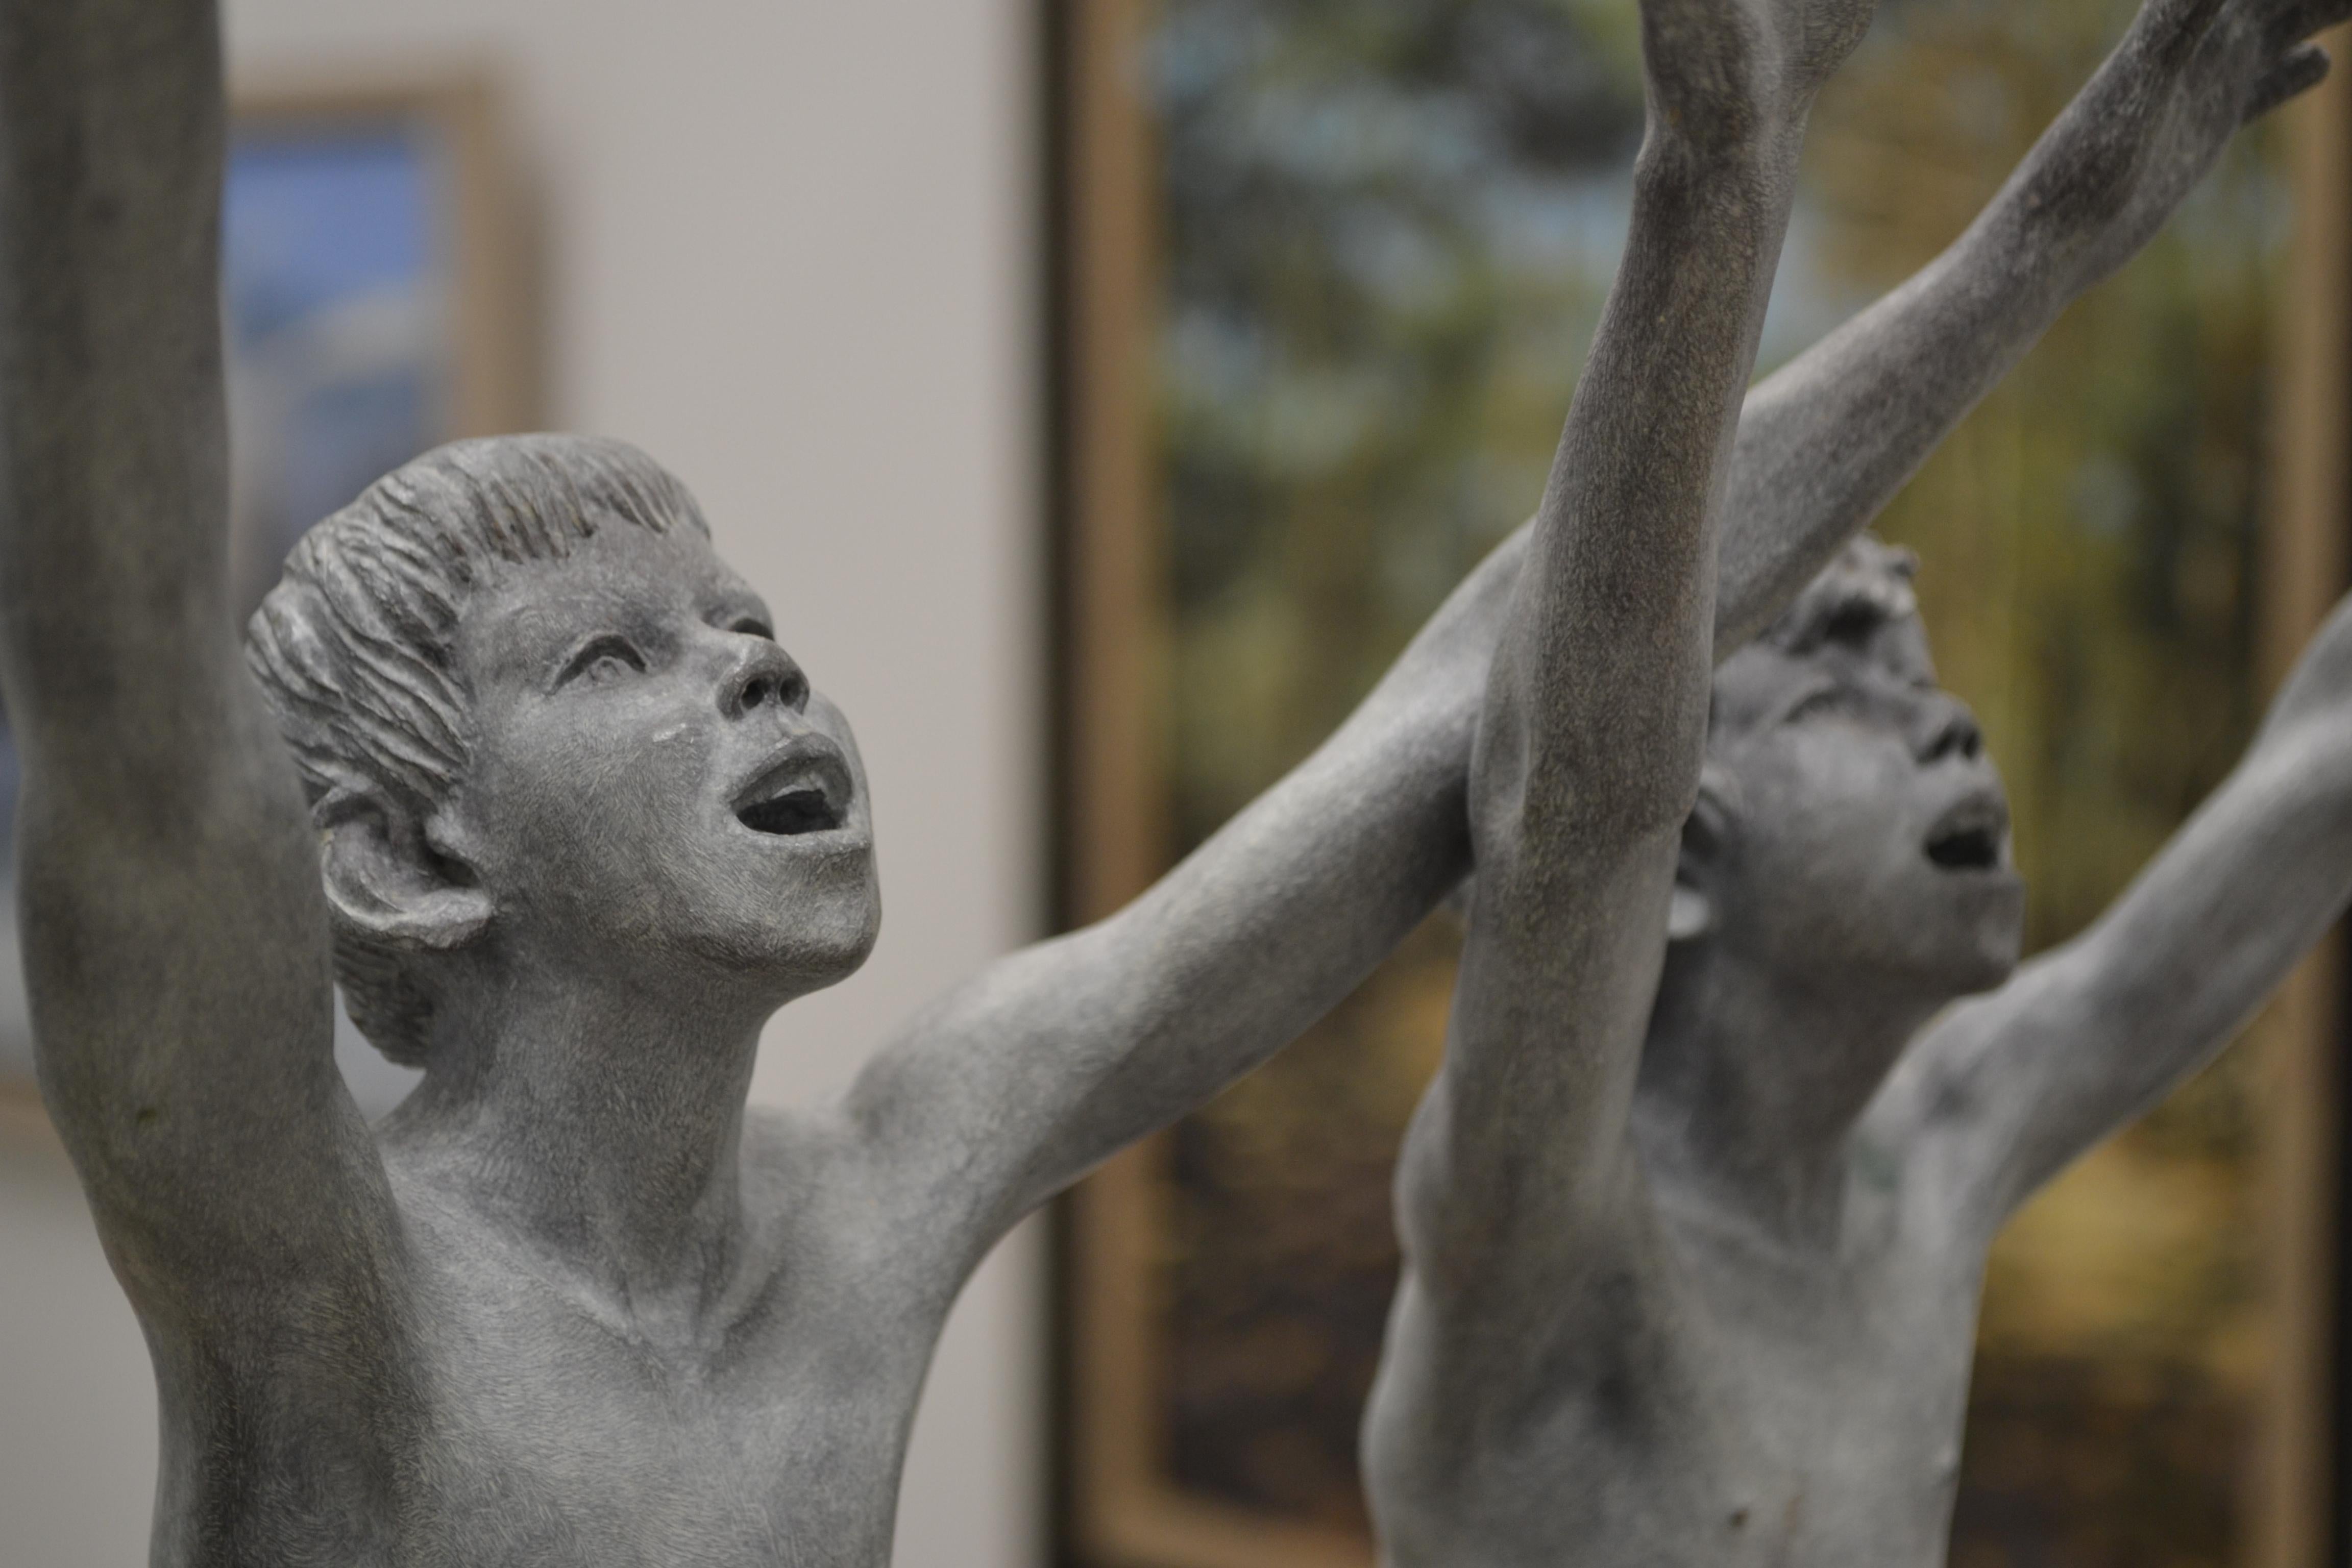 Cursus – zeitgenössische Bronzeskulptur zweier nackter laufender Jungen aus dem 21. Jahrhundert 5